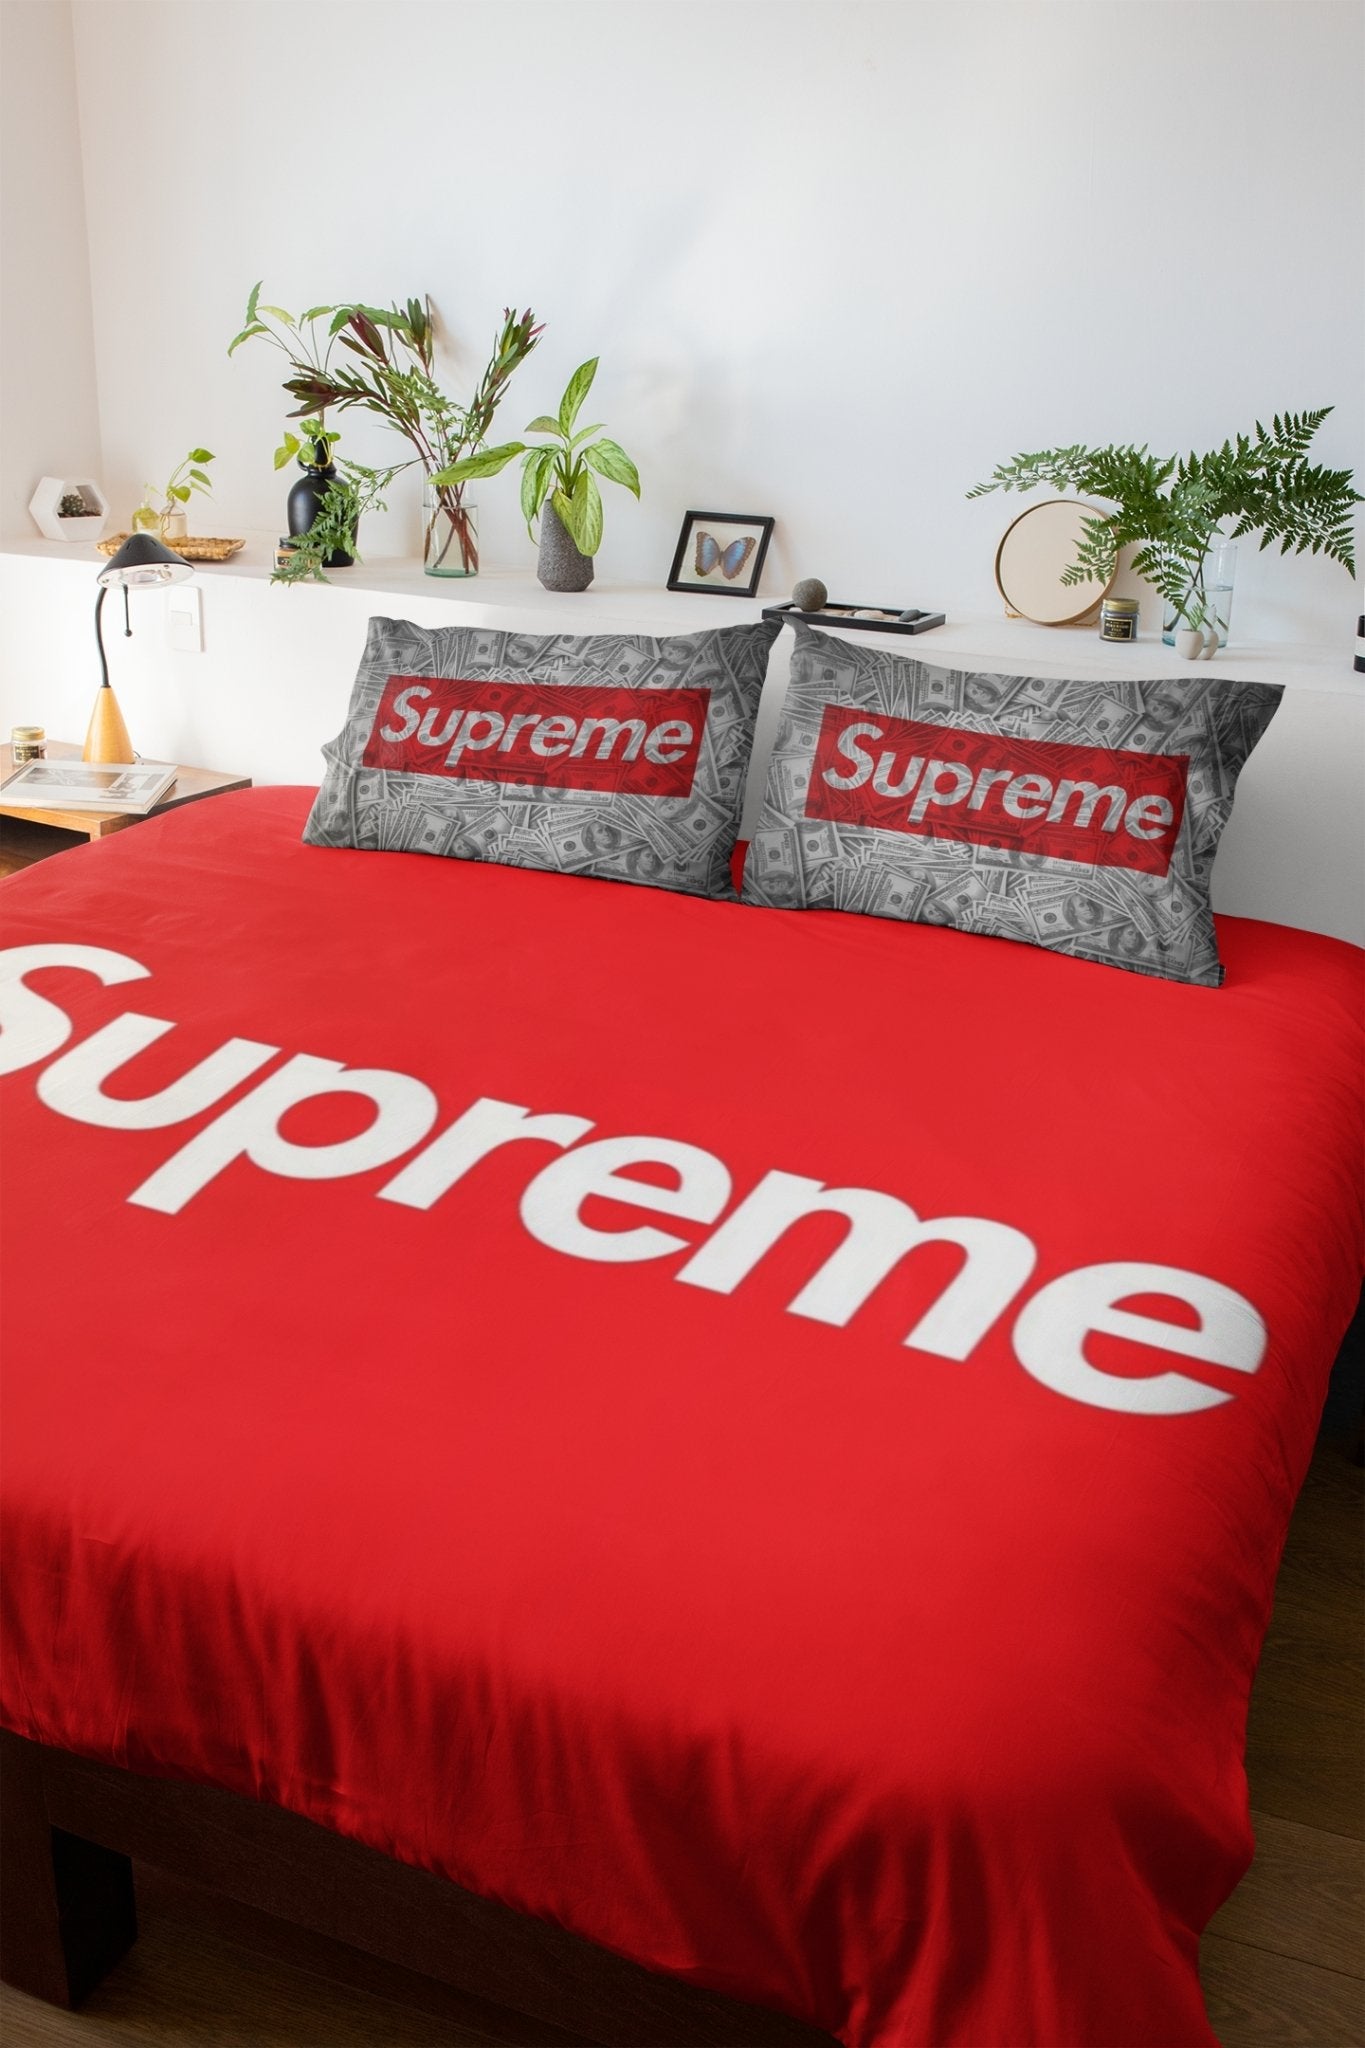 Supreme Bedsheets, Luxury Bedsheets